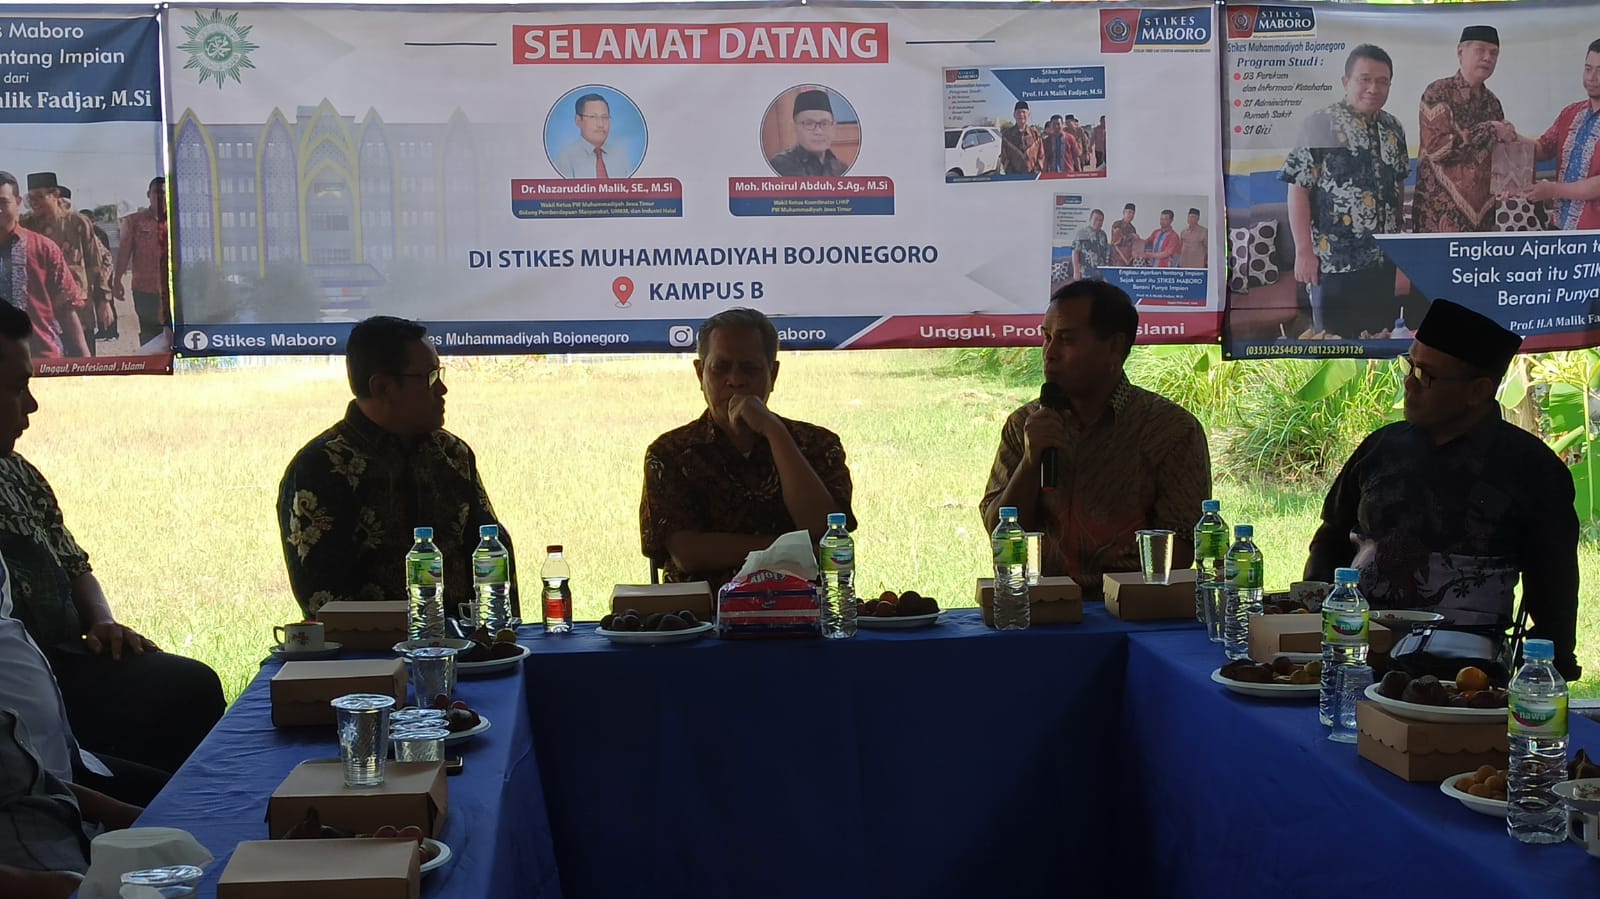 Ngopi dan Diskusi Santai Stikes Muhammadiyah Bojonegoro dengan Wakil Ketua PWM Jawa Timur : “PWM Jawa Timur turut mendukung pengembangan perguruan tinggi di Bojonegoro